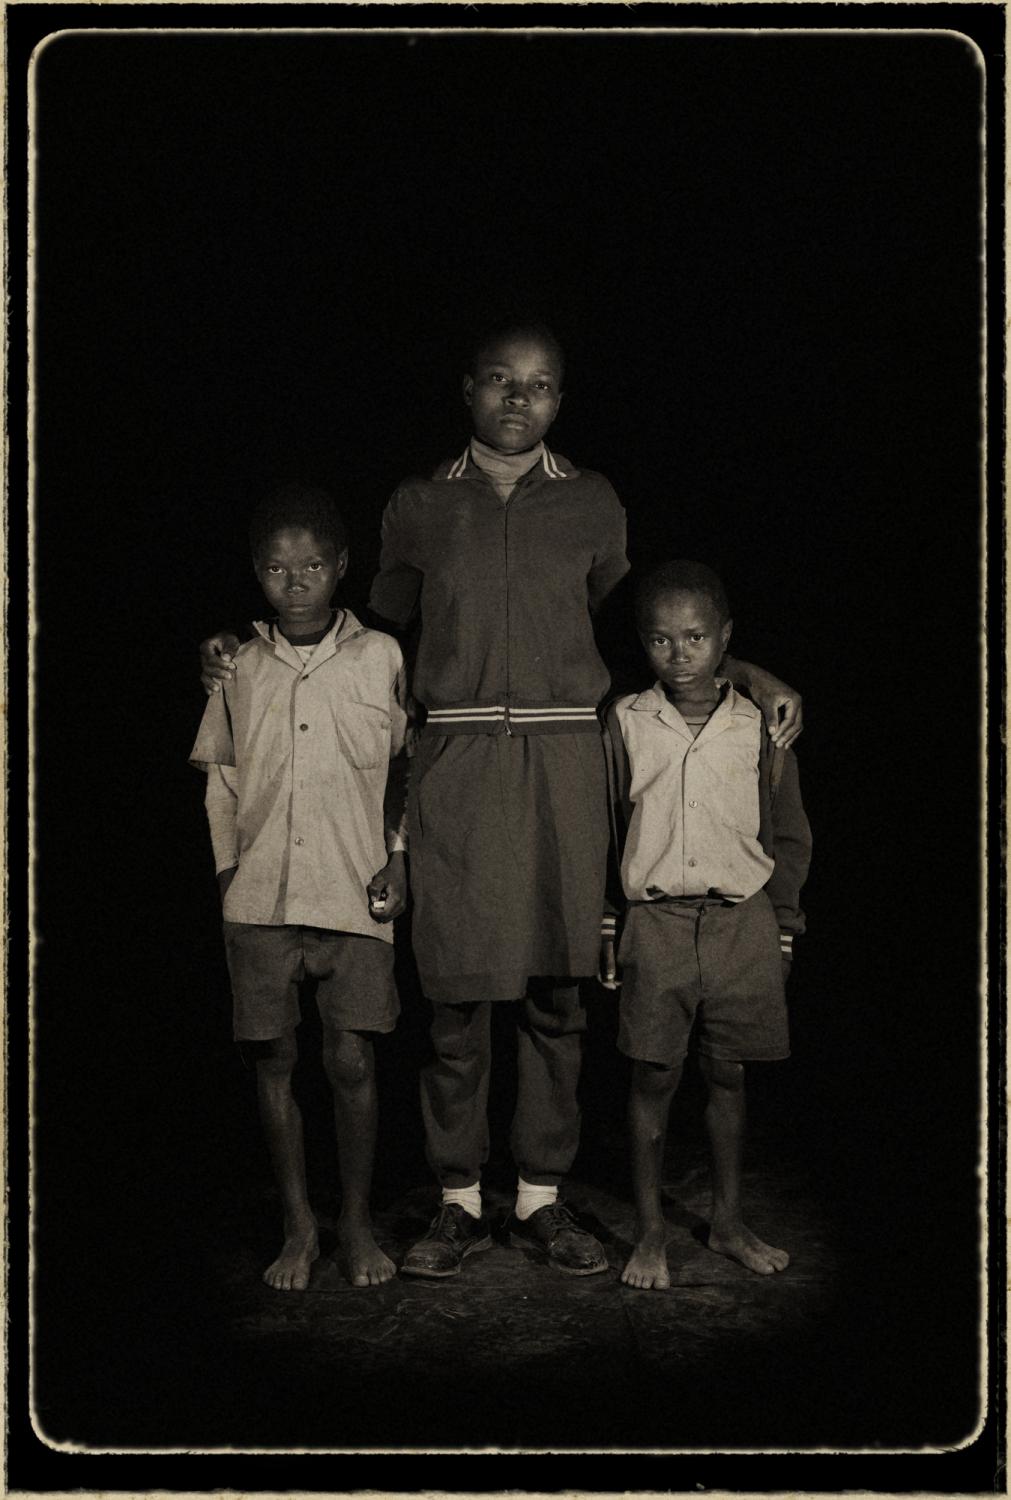 Orphans/ portraits - Hosea, Swaziland.
¨Orphans¨
Portrait of...